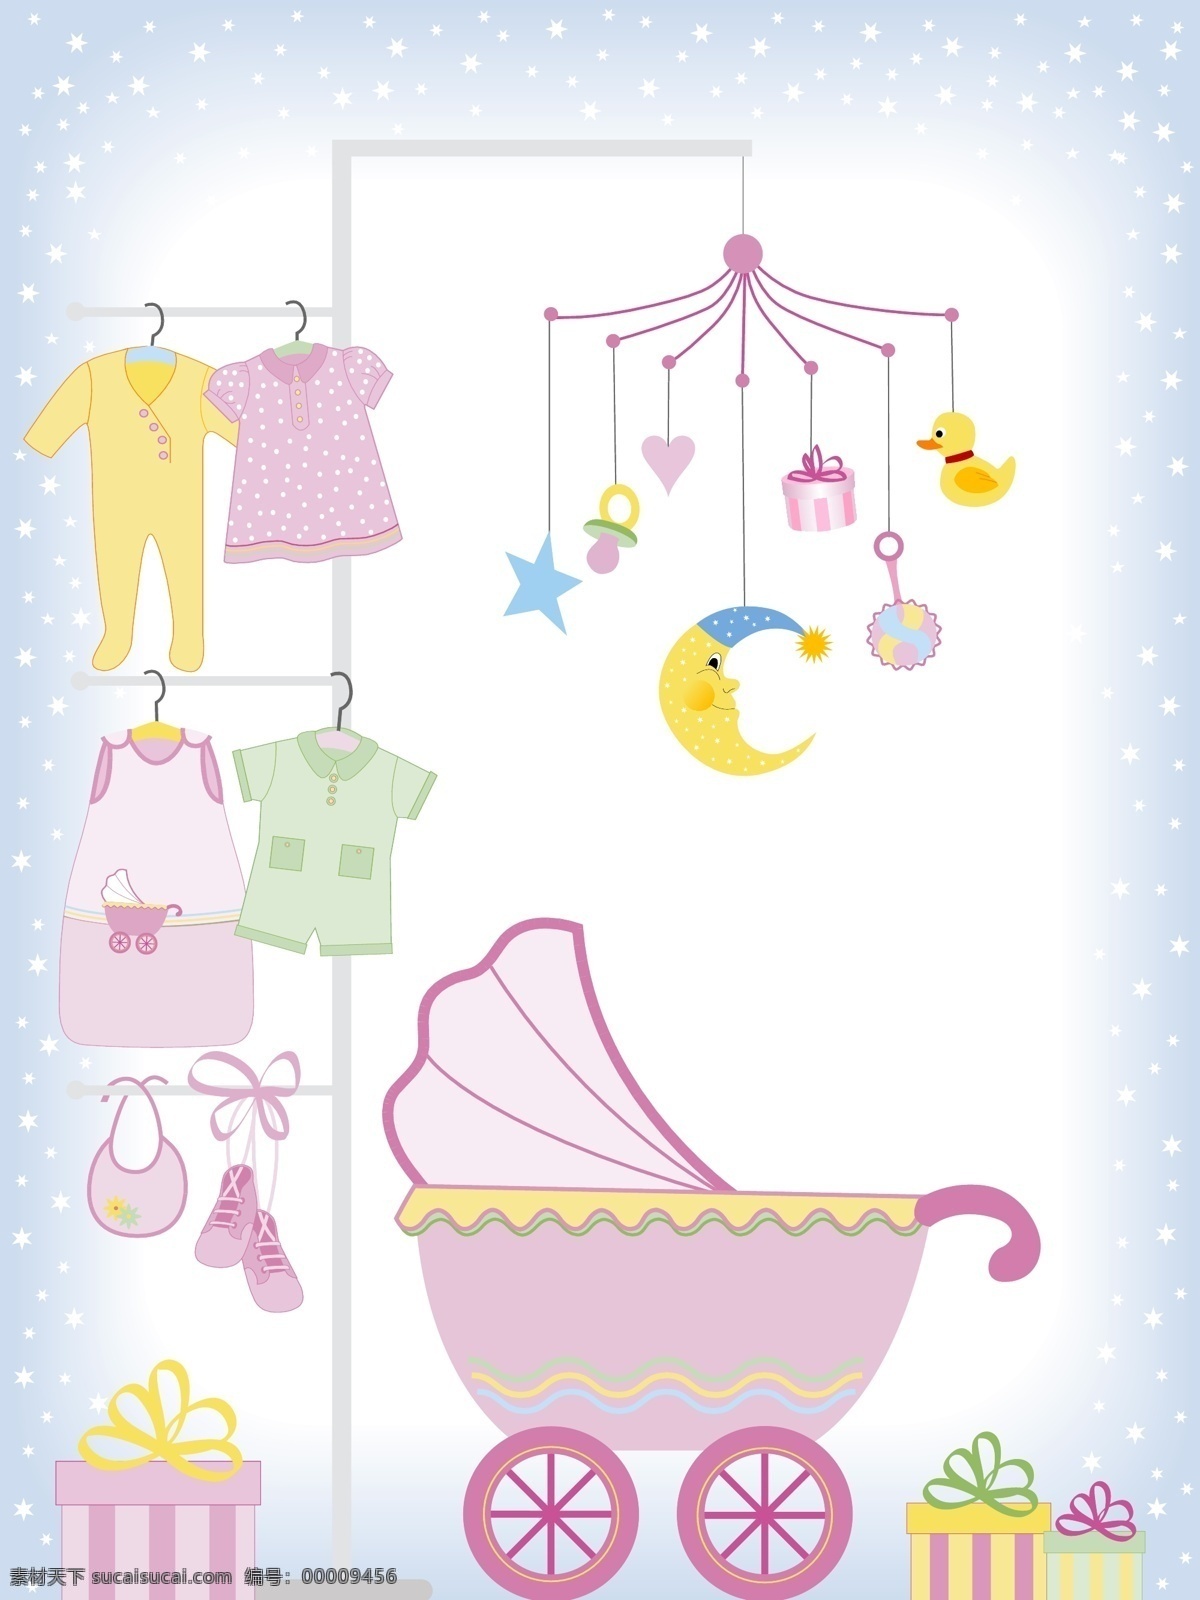 婴儿用品 矢量 婴儿 玩具 衣服 宝宝 宝宝衣服 生活百科 生活用品 矢量图库